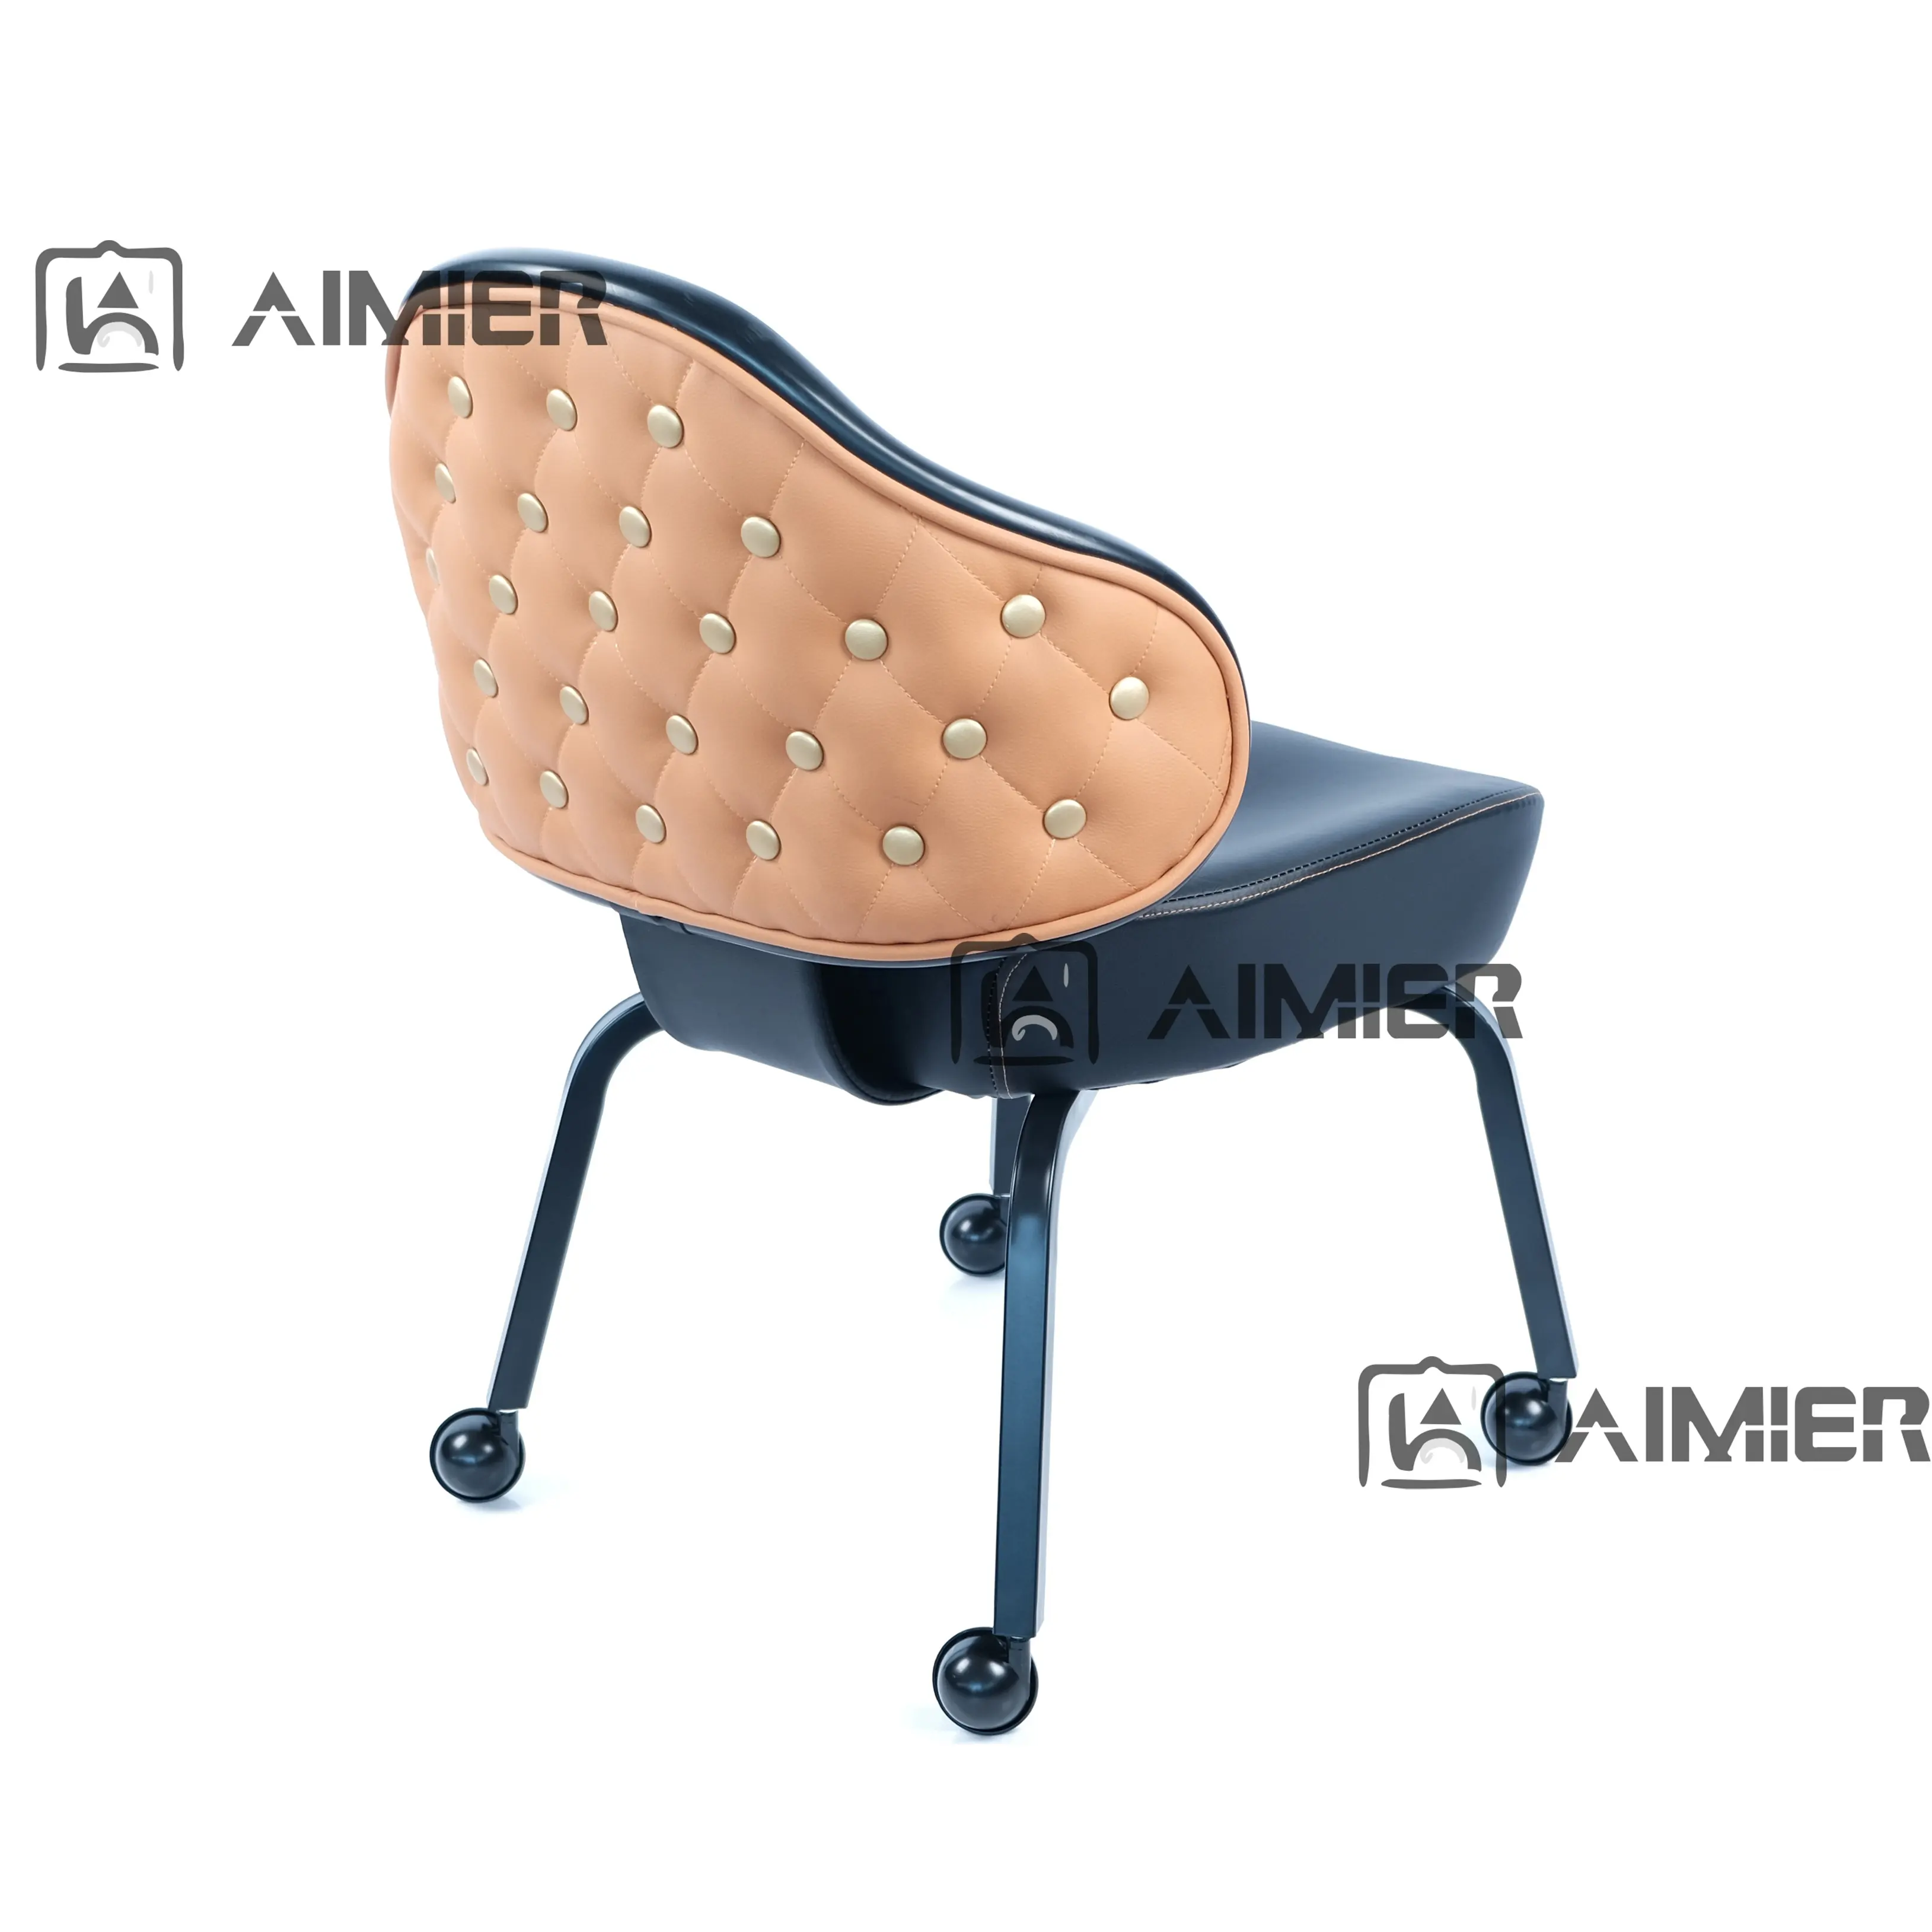 Поворотные стулья Aimier Las Vegas, красные стулья из натуральной кожи для казино, четыре колеса, стулья для слотов